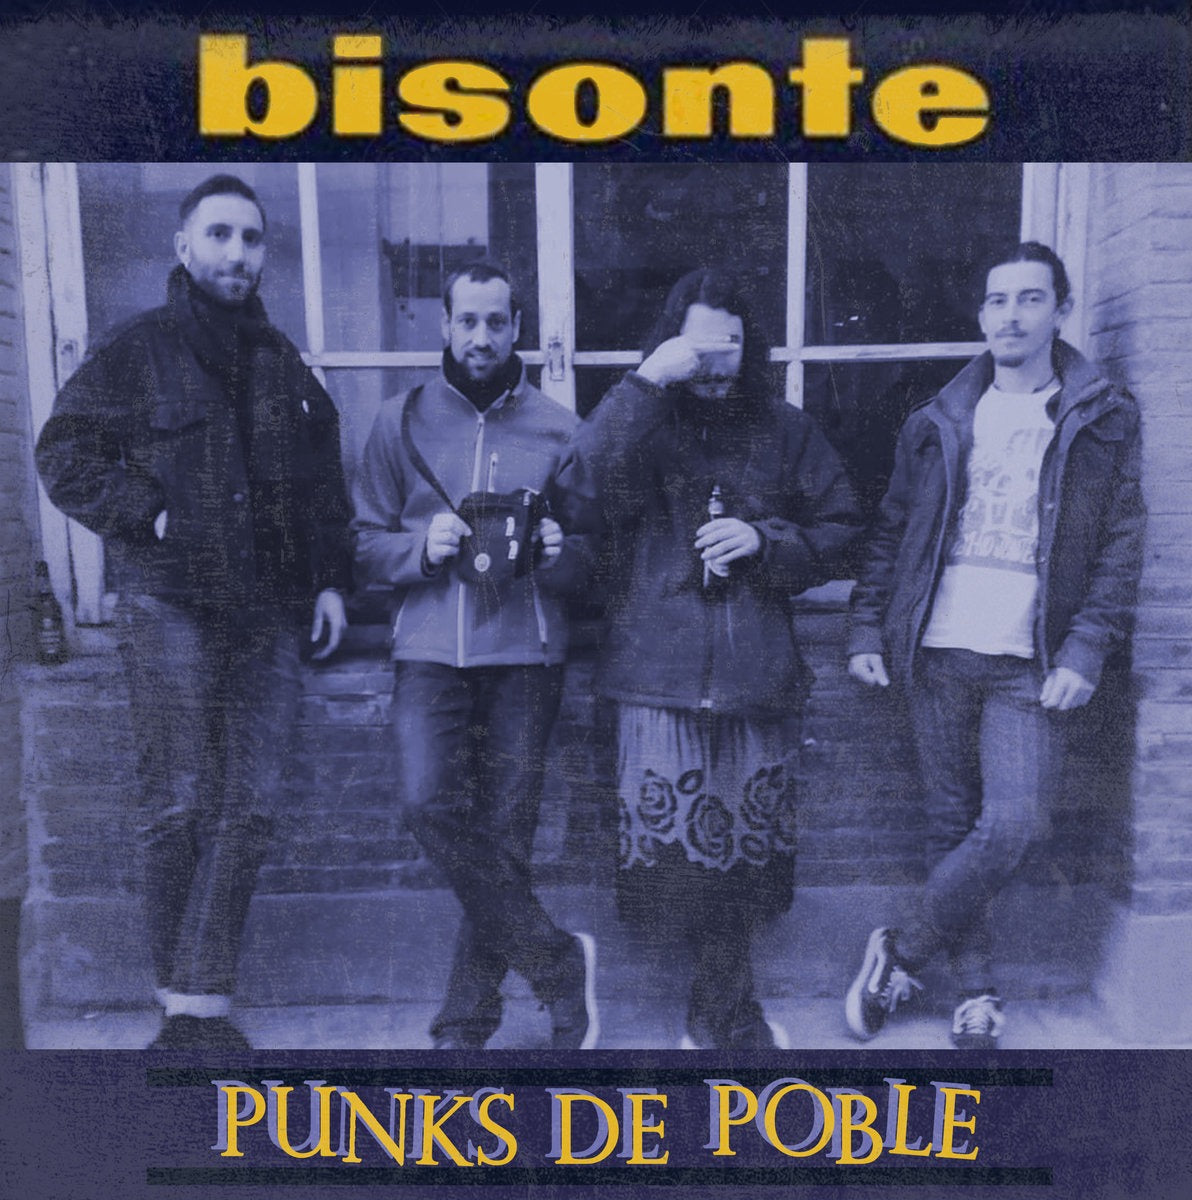 BISONTE "Punks de poble" LP